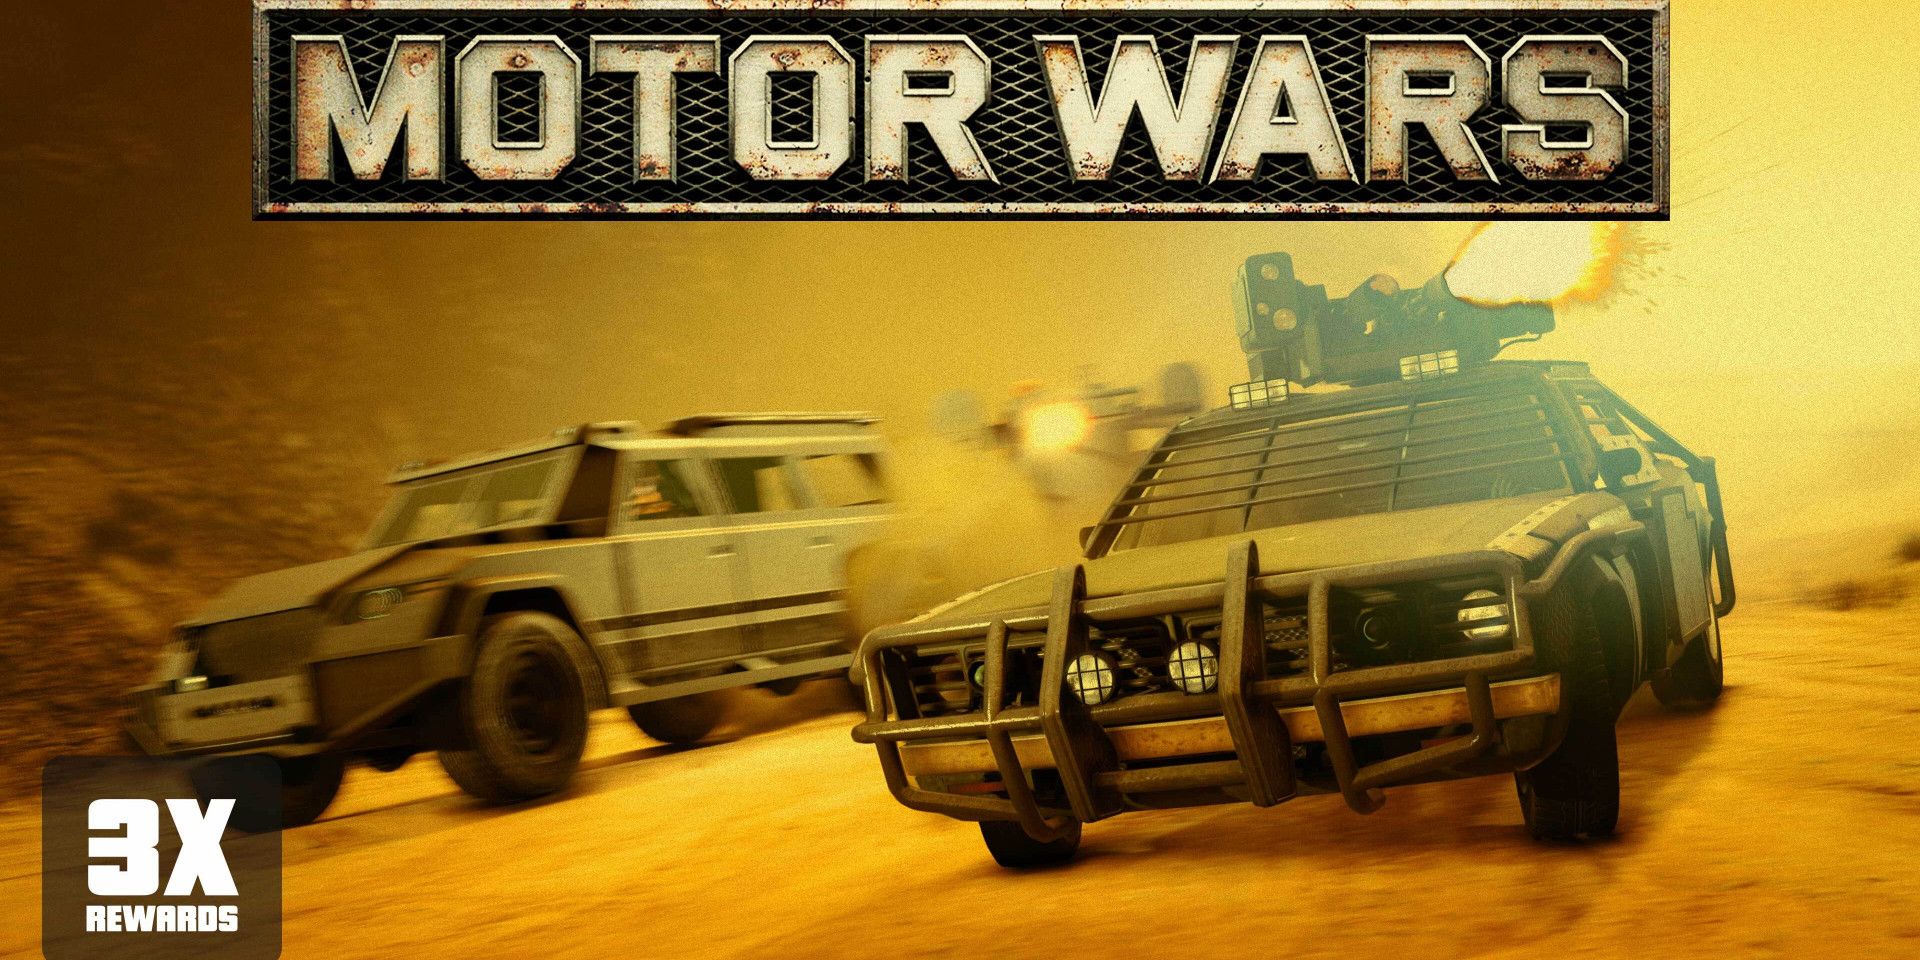 GTA Online Motor Wars 3x Event